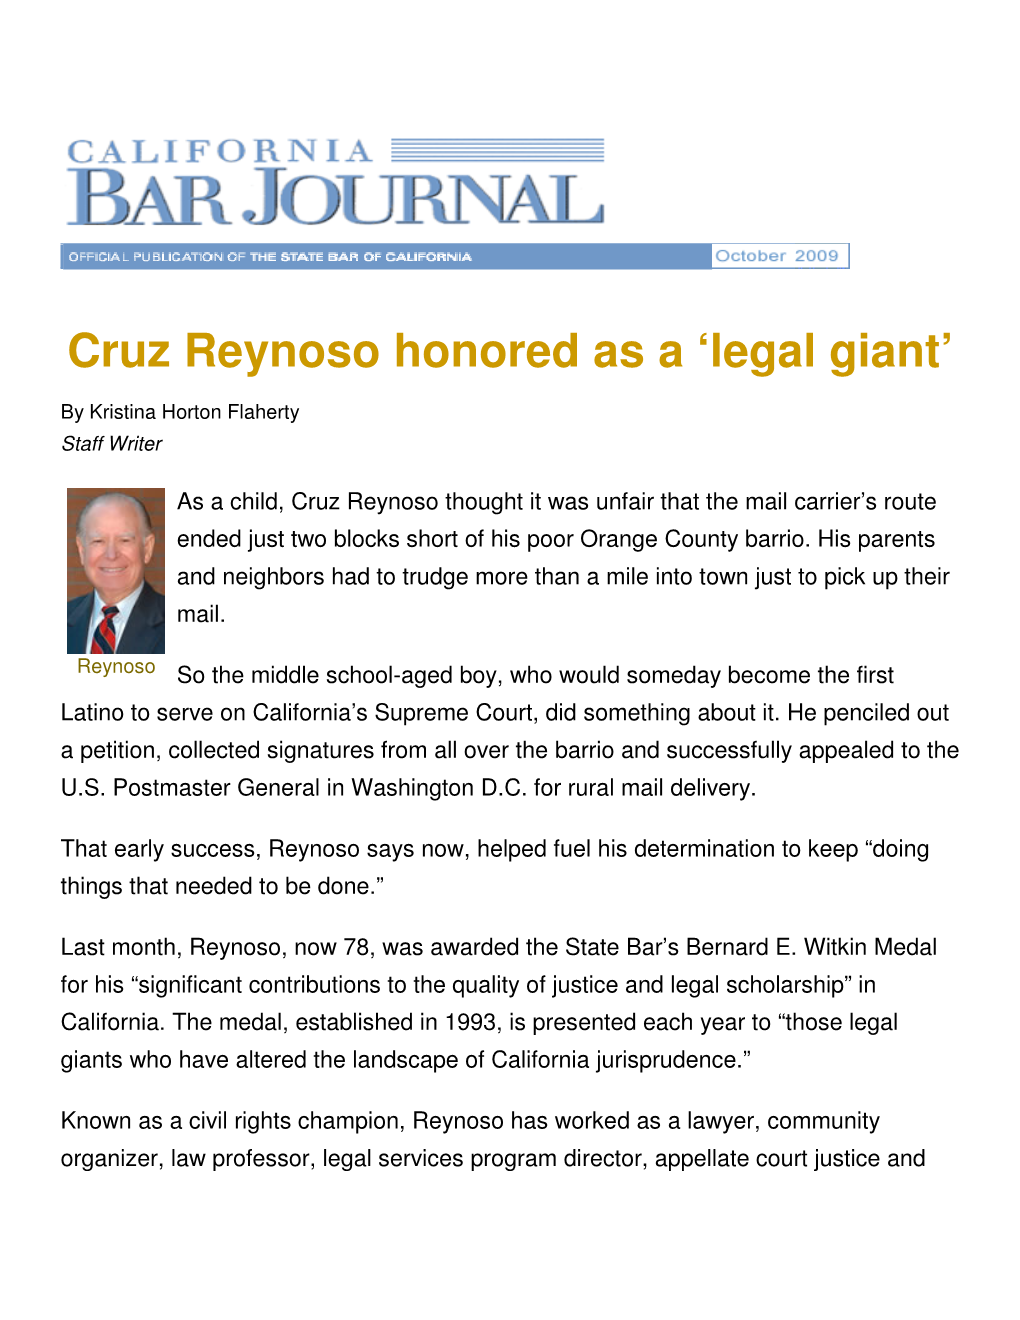 Cruz Reynoso Honored As a 'Legal Giant'